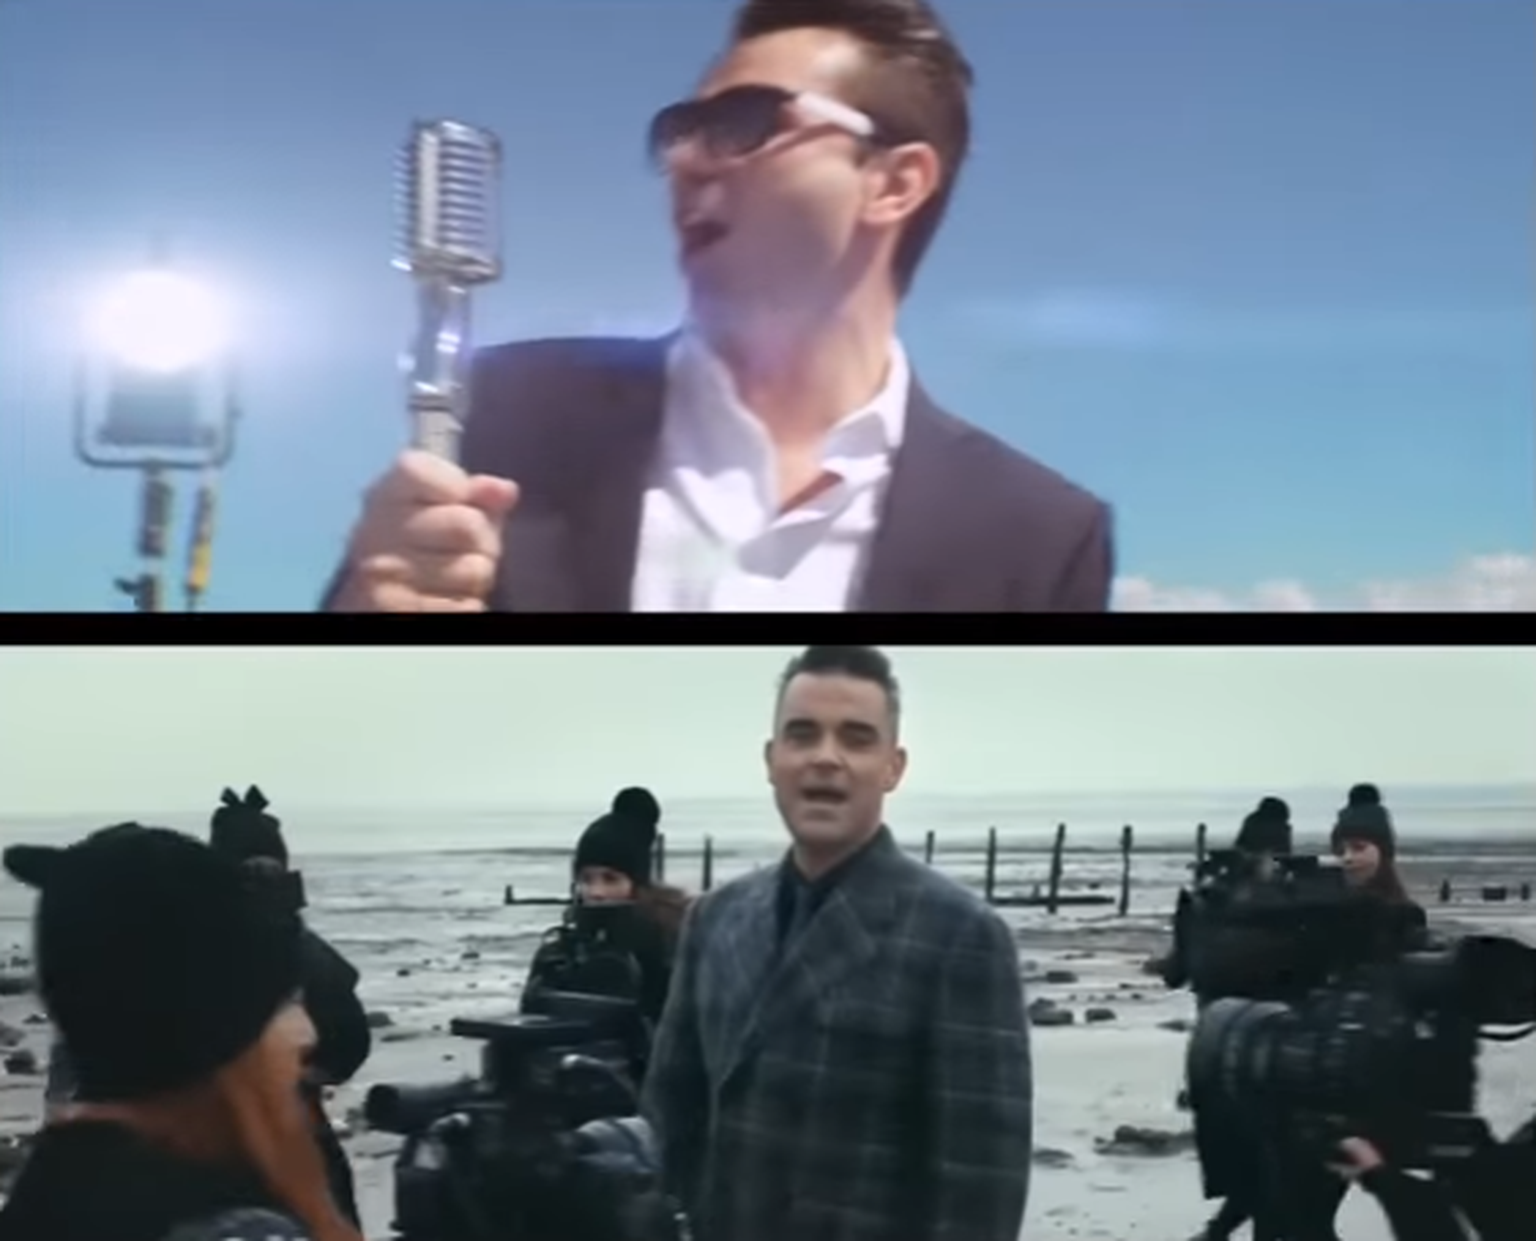 Lasnamäe vs Robbie Williams